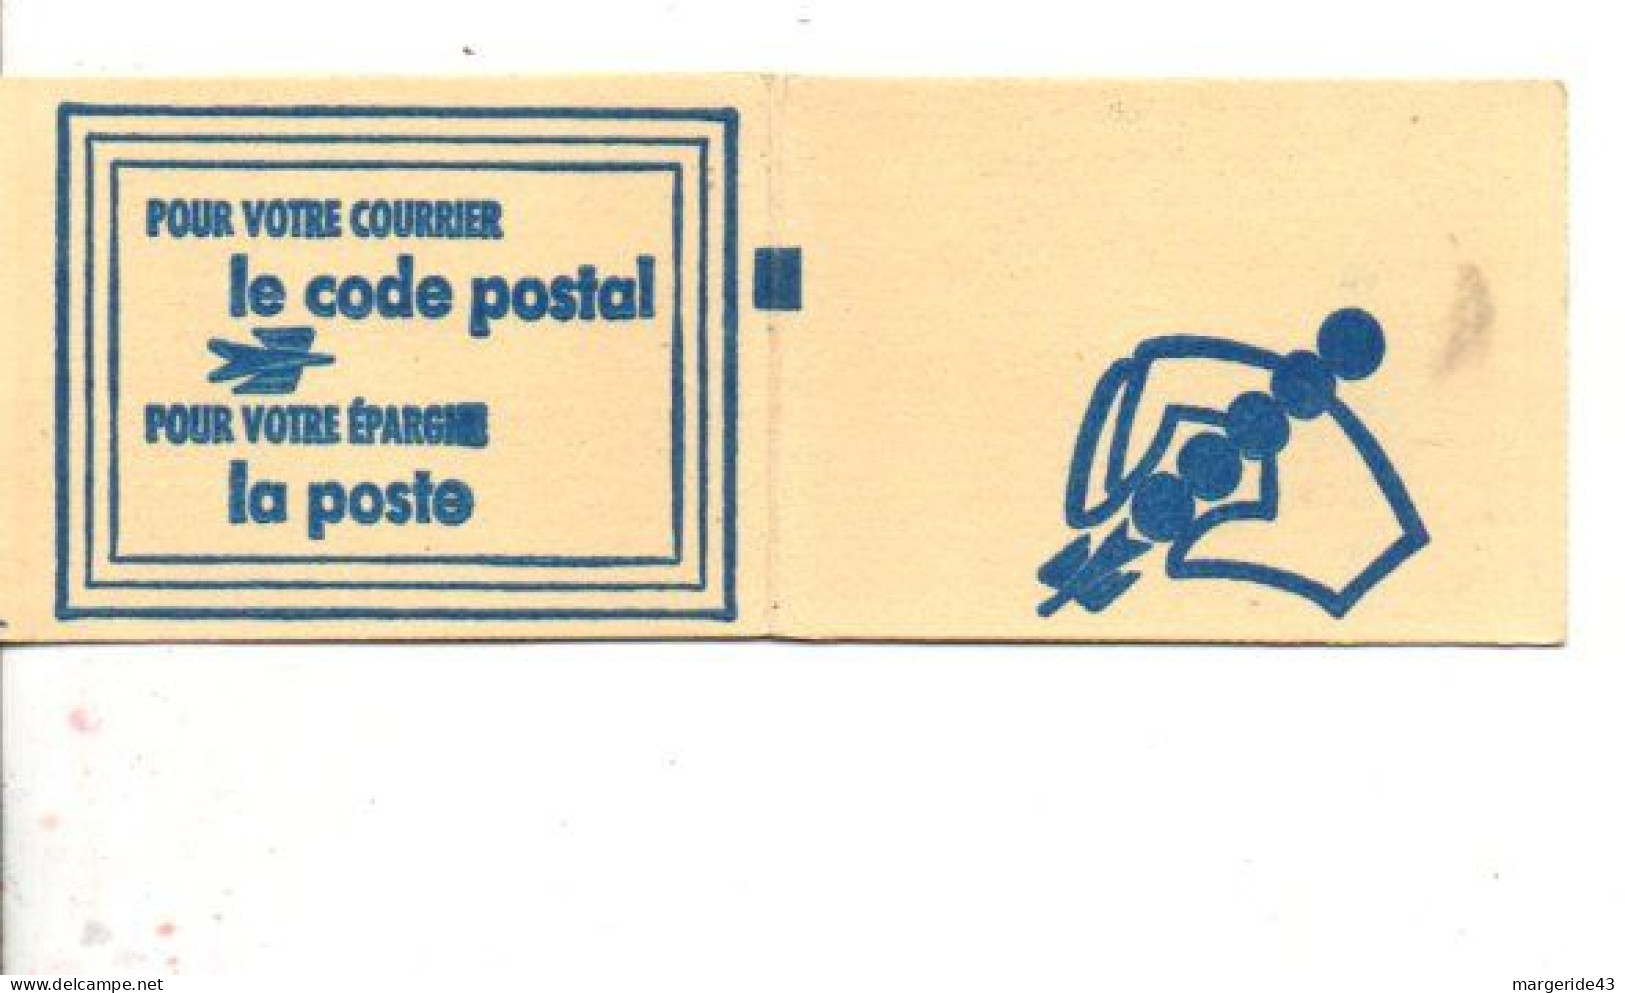 CARNET CODE POSTAL - 75116 PARIS VERT - Blokken & Postzegelboekjes